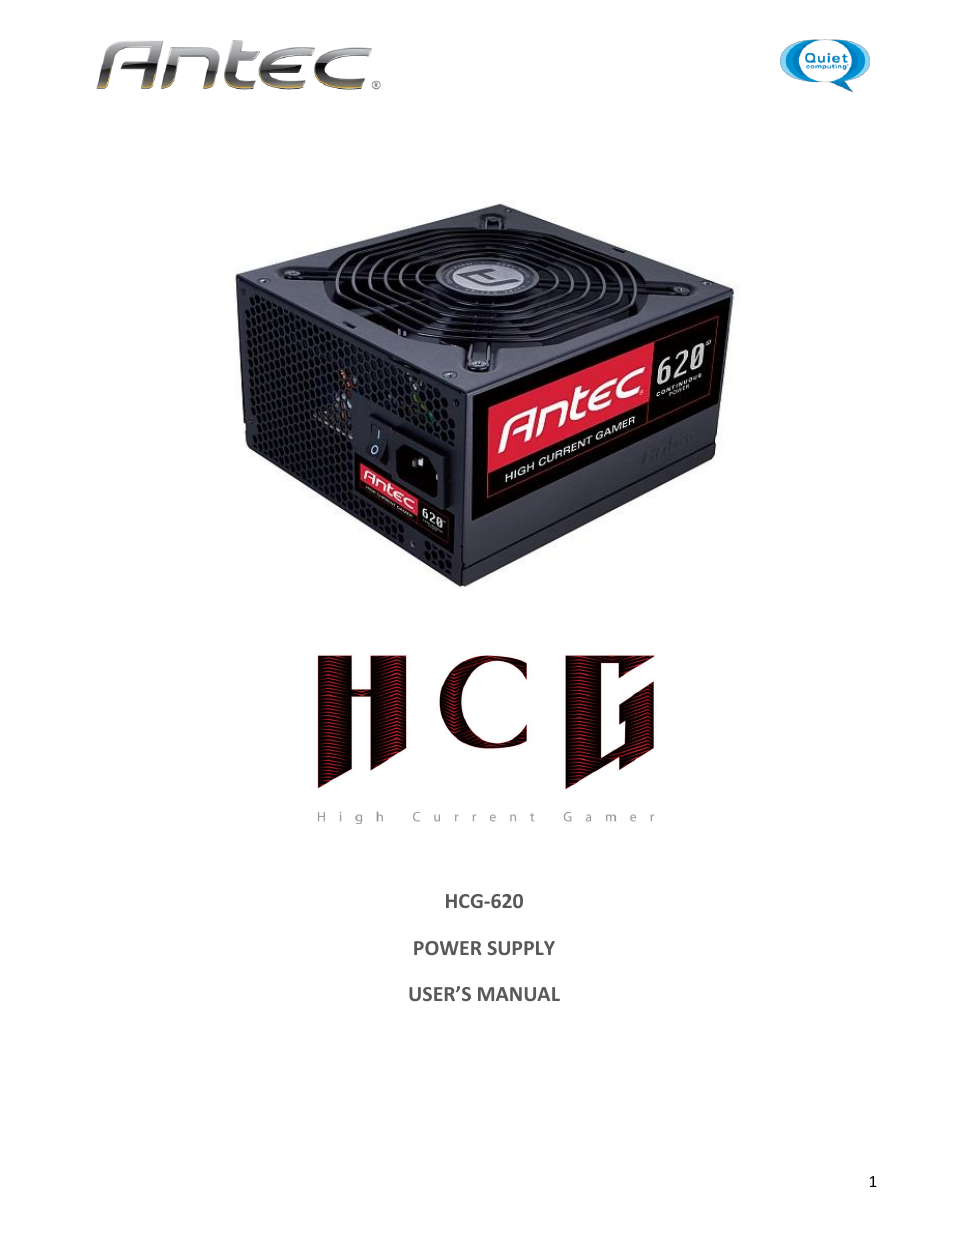 HCG-620